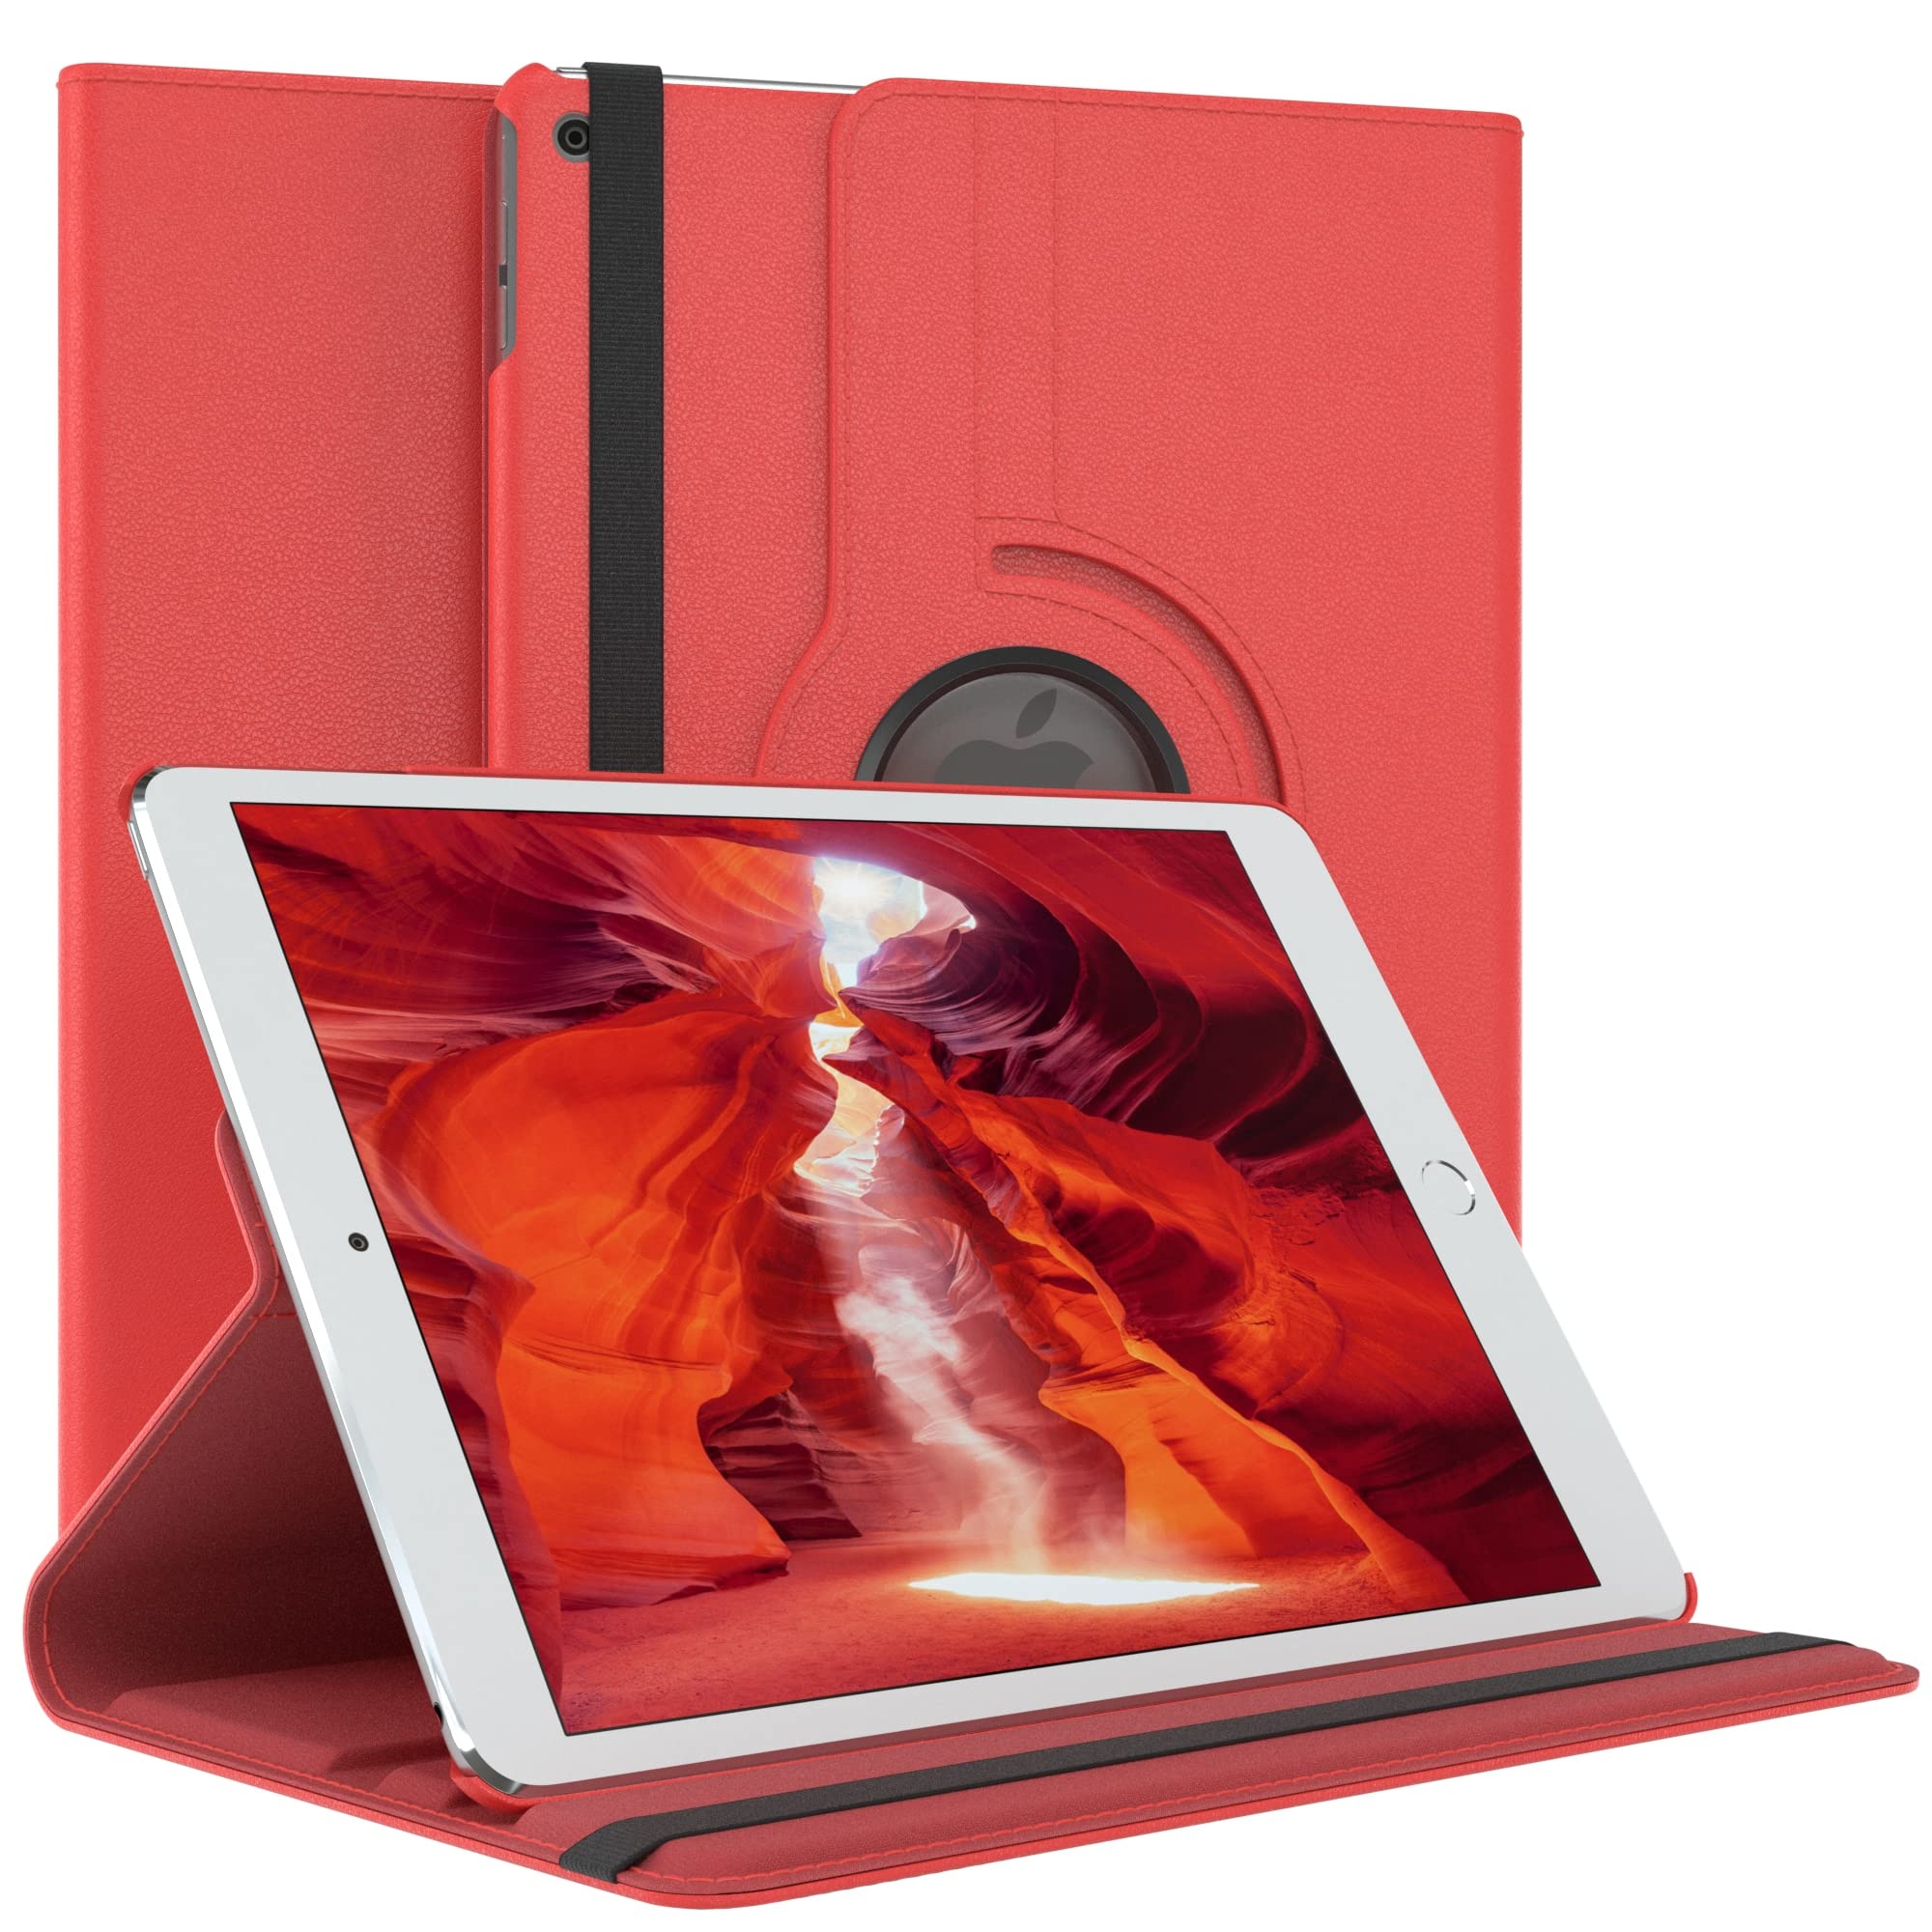 EAZY CASE - Tablet Hülle für iPad Air 1. Generation (2013) Schutzhülle 9.7 Zoll Smart Cover Tablet Case Rotationcase zum Aufstellen Klapphülle 360° drehbar mit Standfunktion Tasche Kunstleder Rot